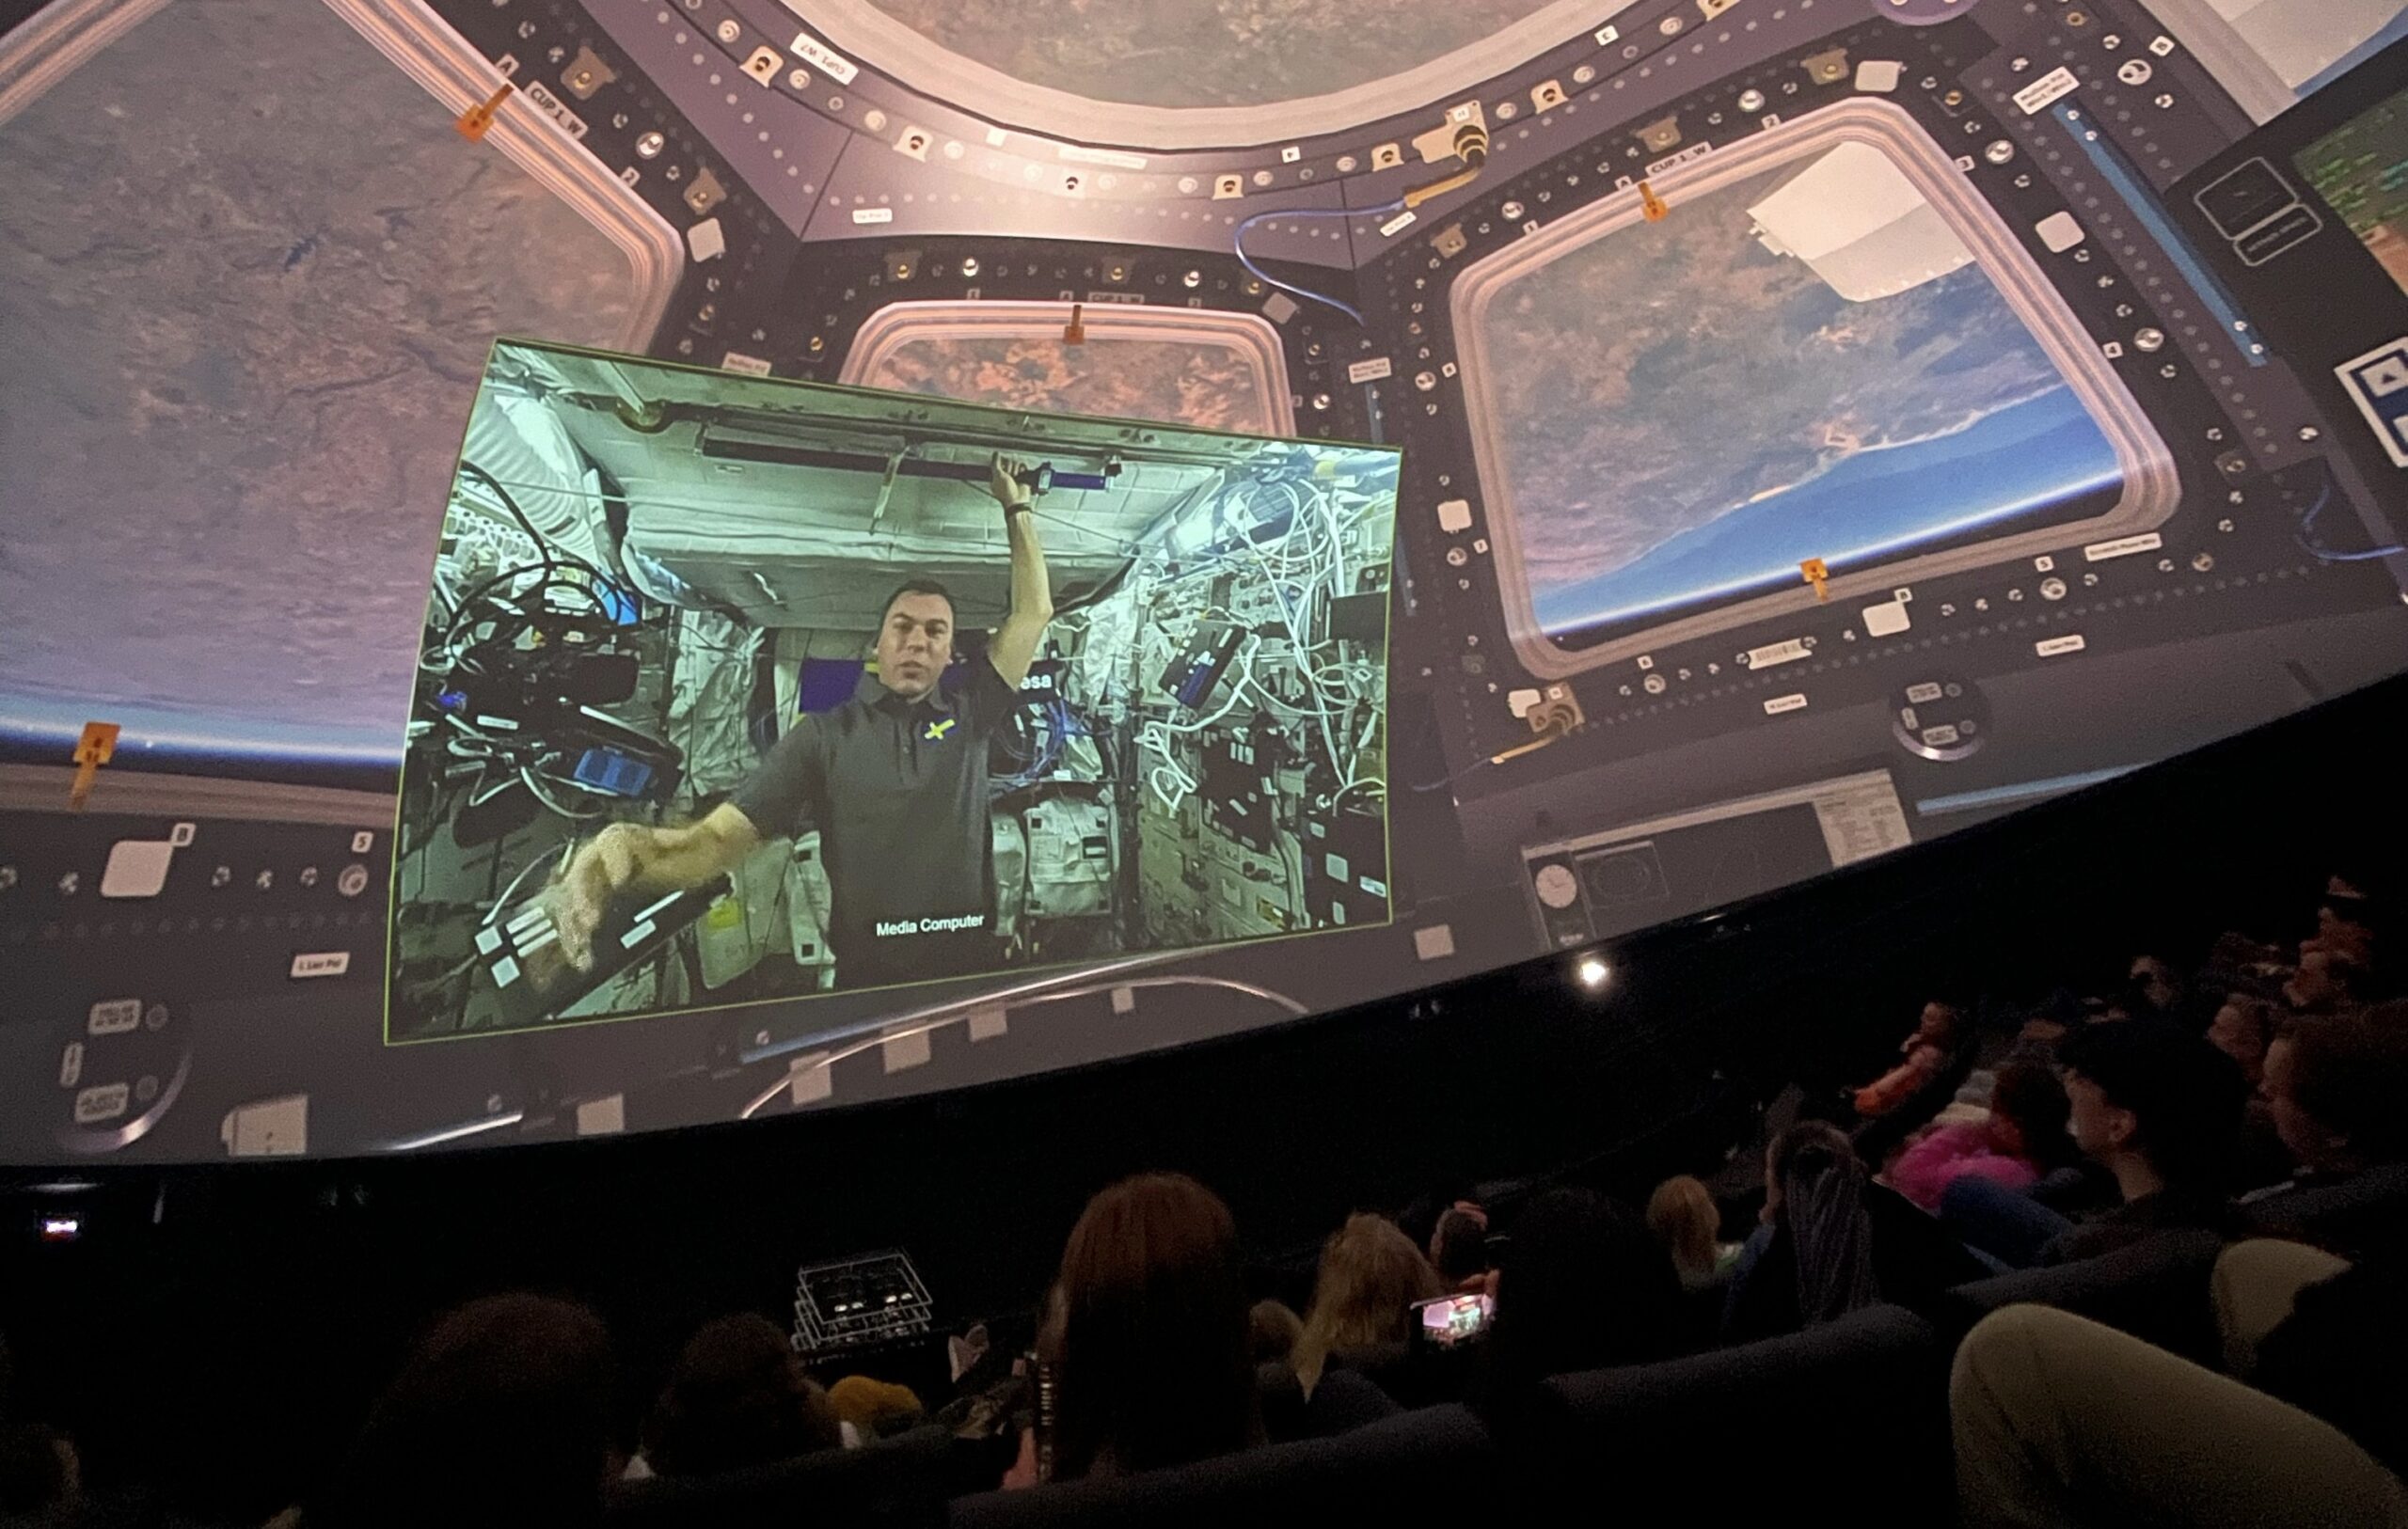 Wisdome visar föreställning med astronaut i rymdskepp